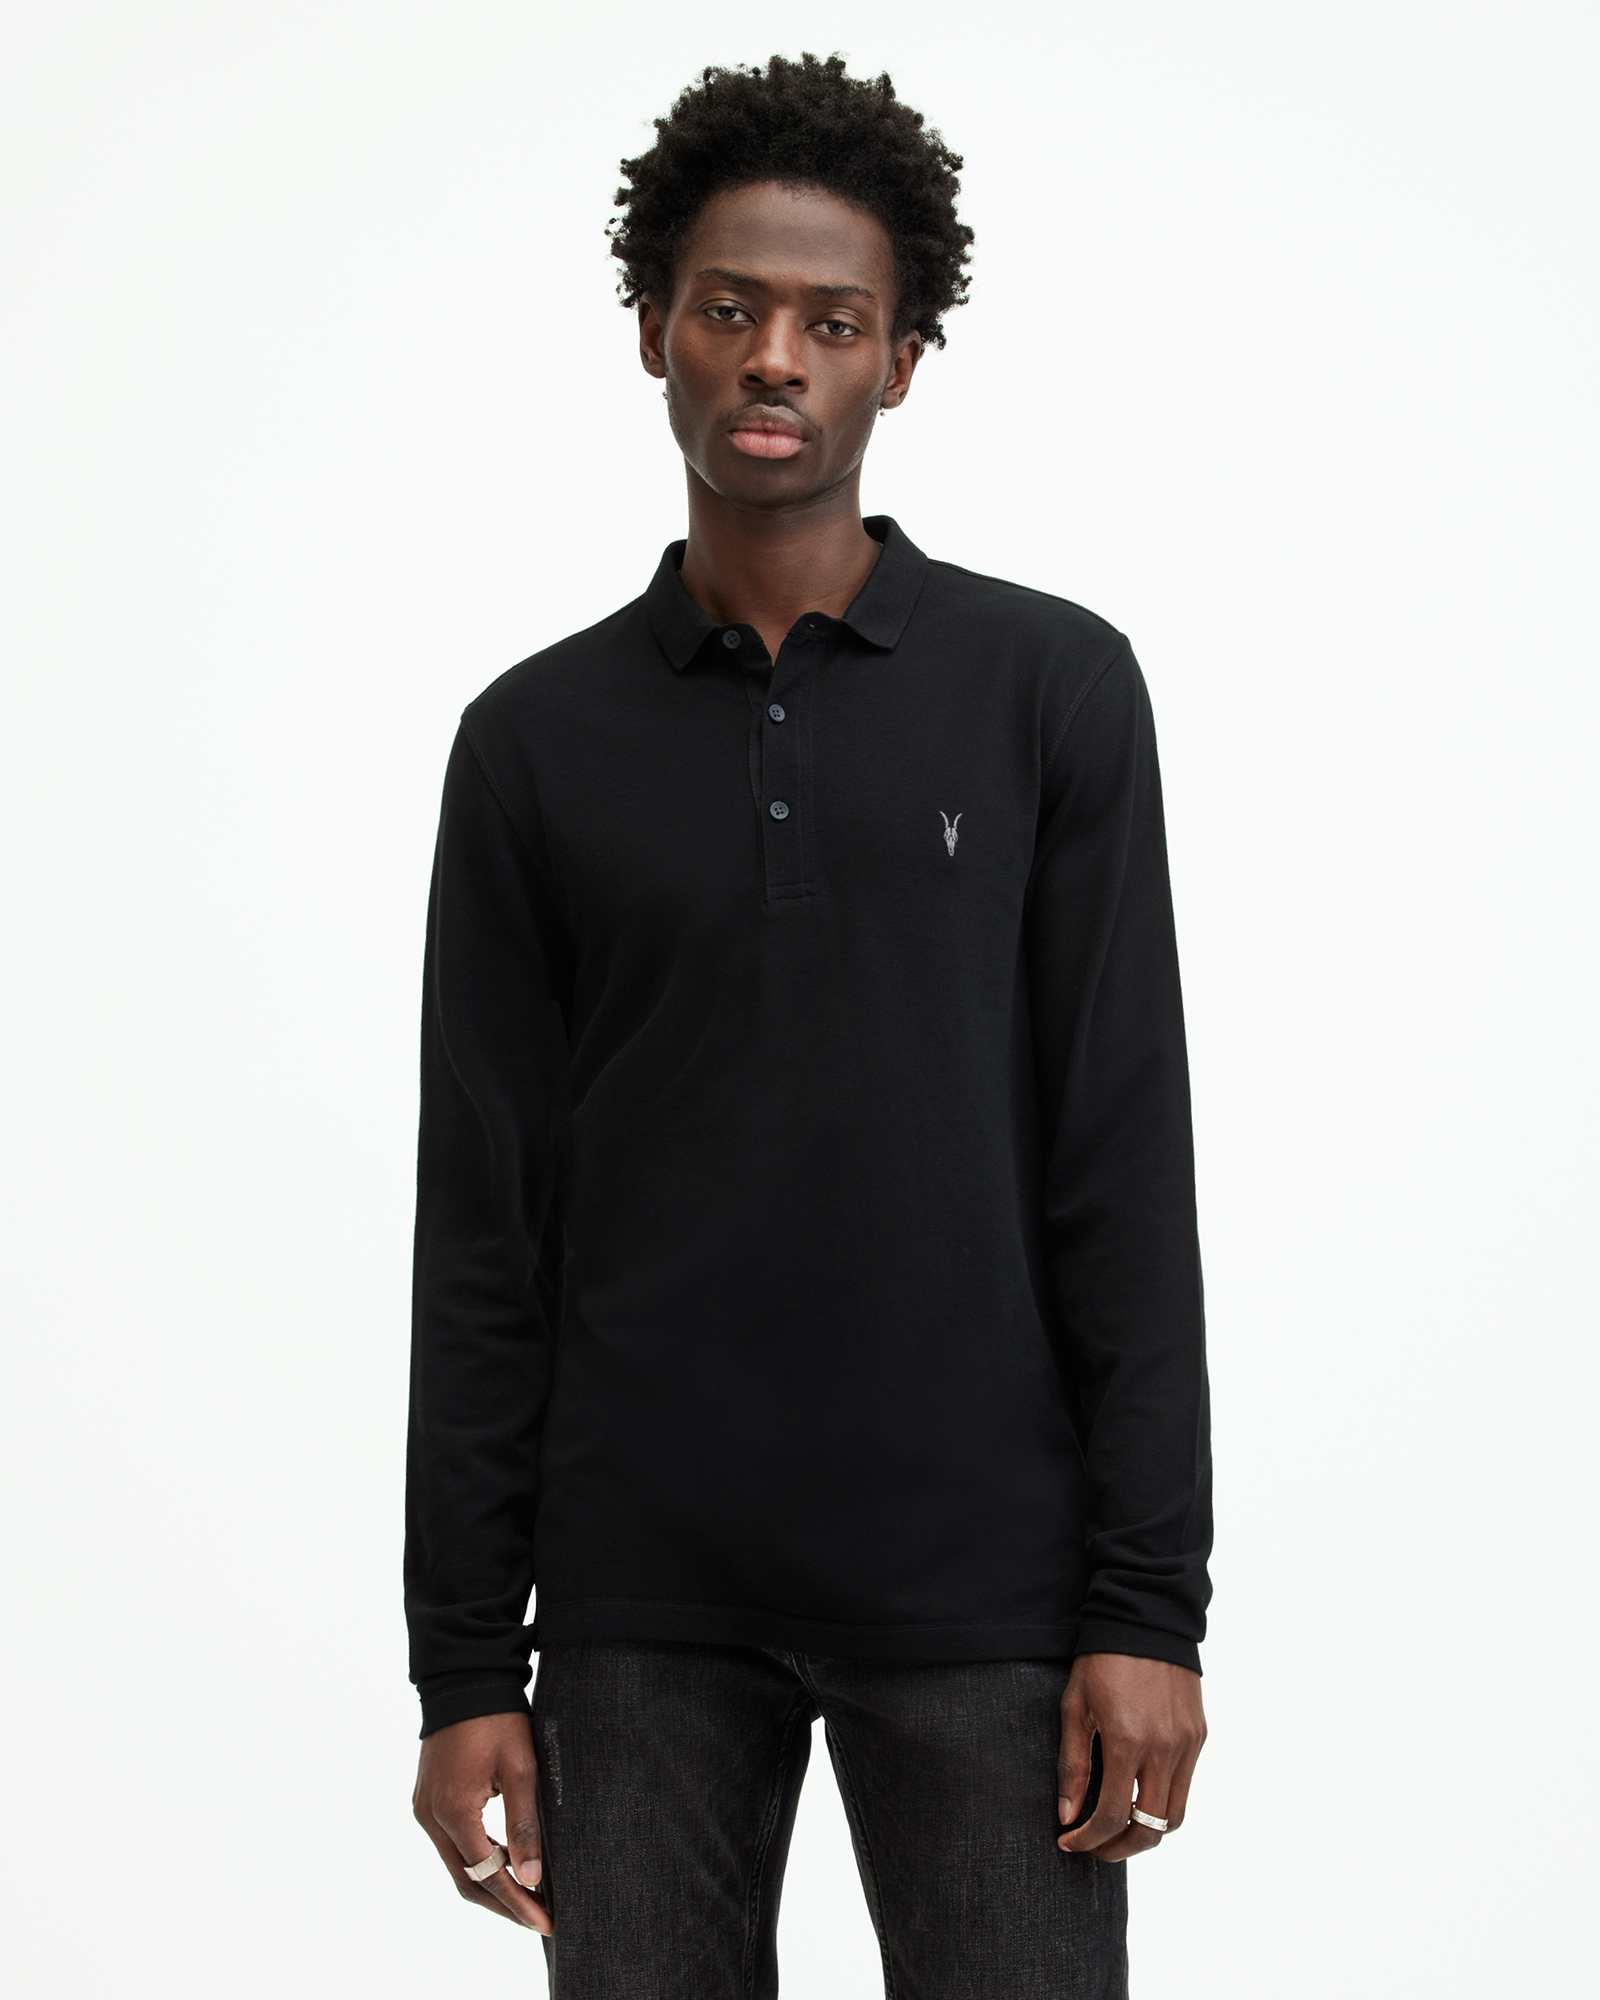 AllSaints Men's Cotton Reform Long Sleeve Polo Shirt, Black, Size: L